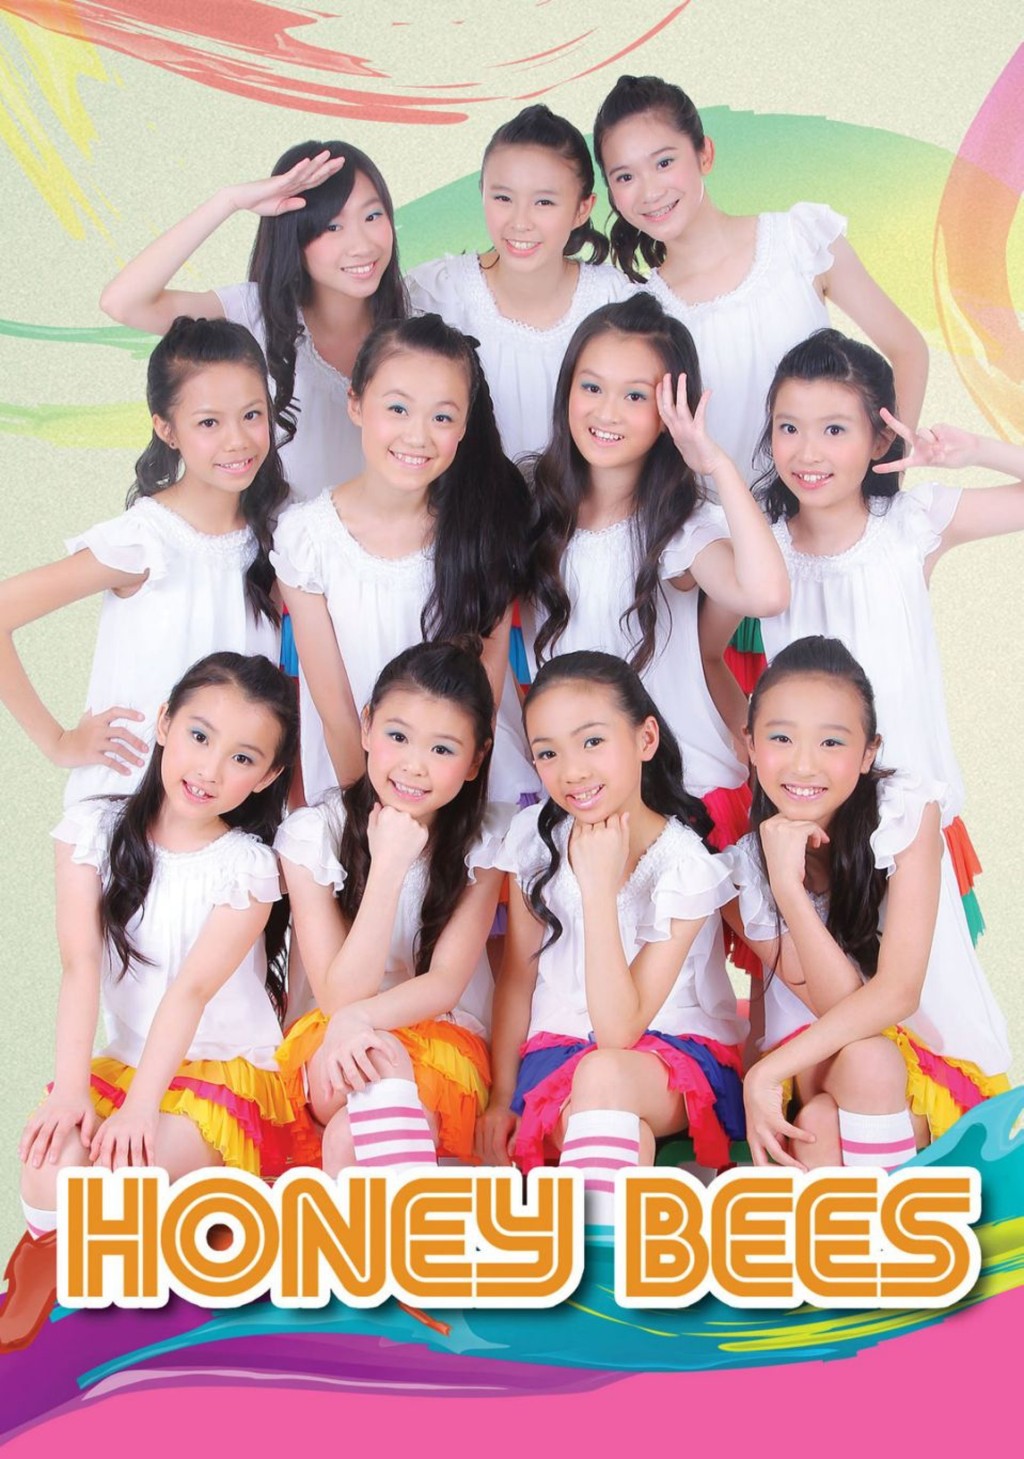 薛家燕2004年创办家燕妈妈艺术中心，近廿年来发掘不少TVB童星，旗下于2011年成军的女团Honey Bees更是出名盛产美女。